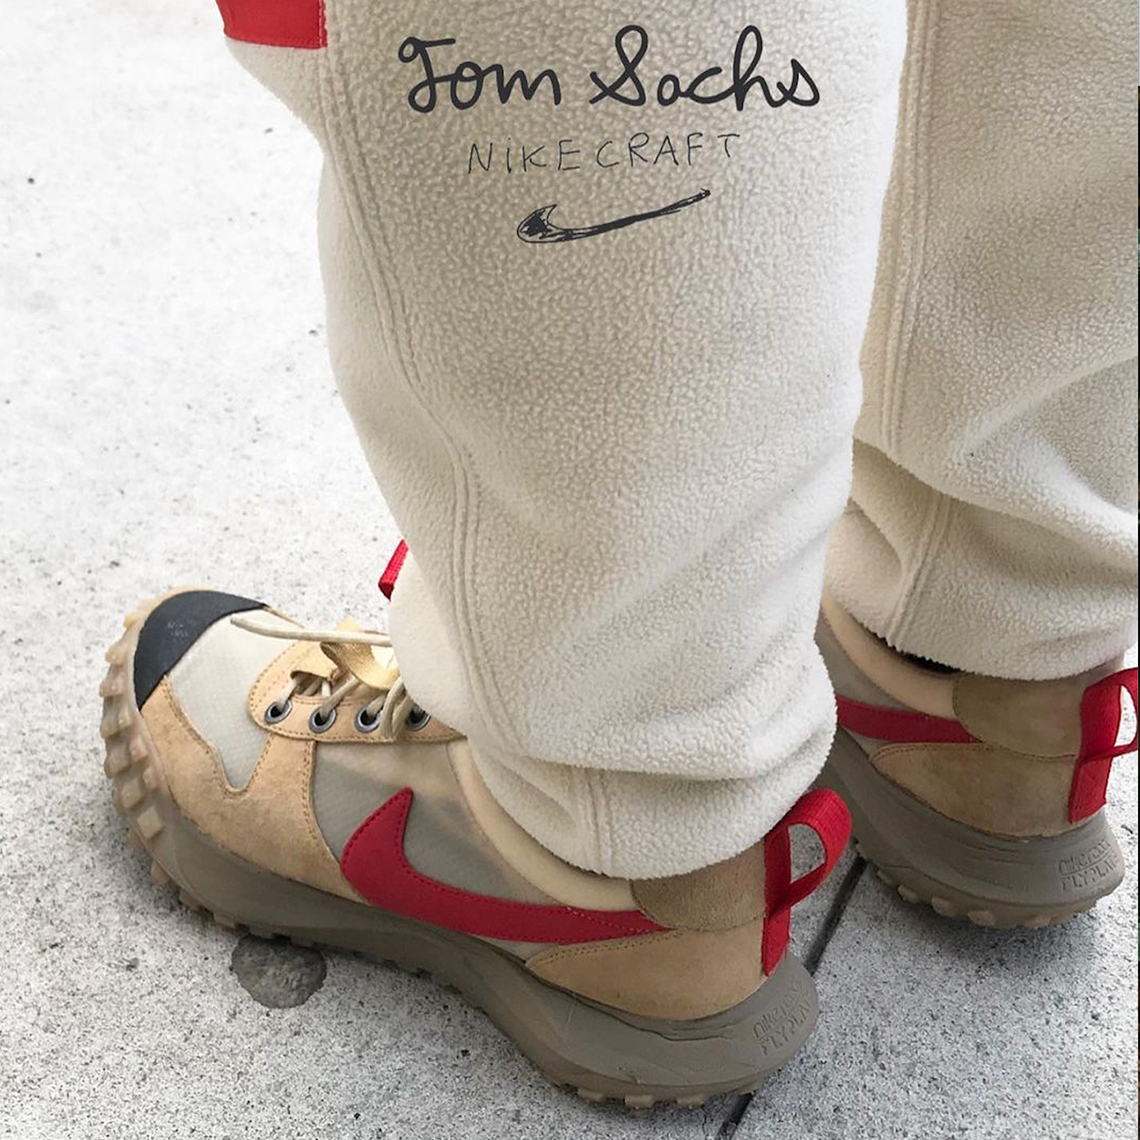 Tom Sachs Nike Mars Yard 2.5 Sample